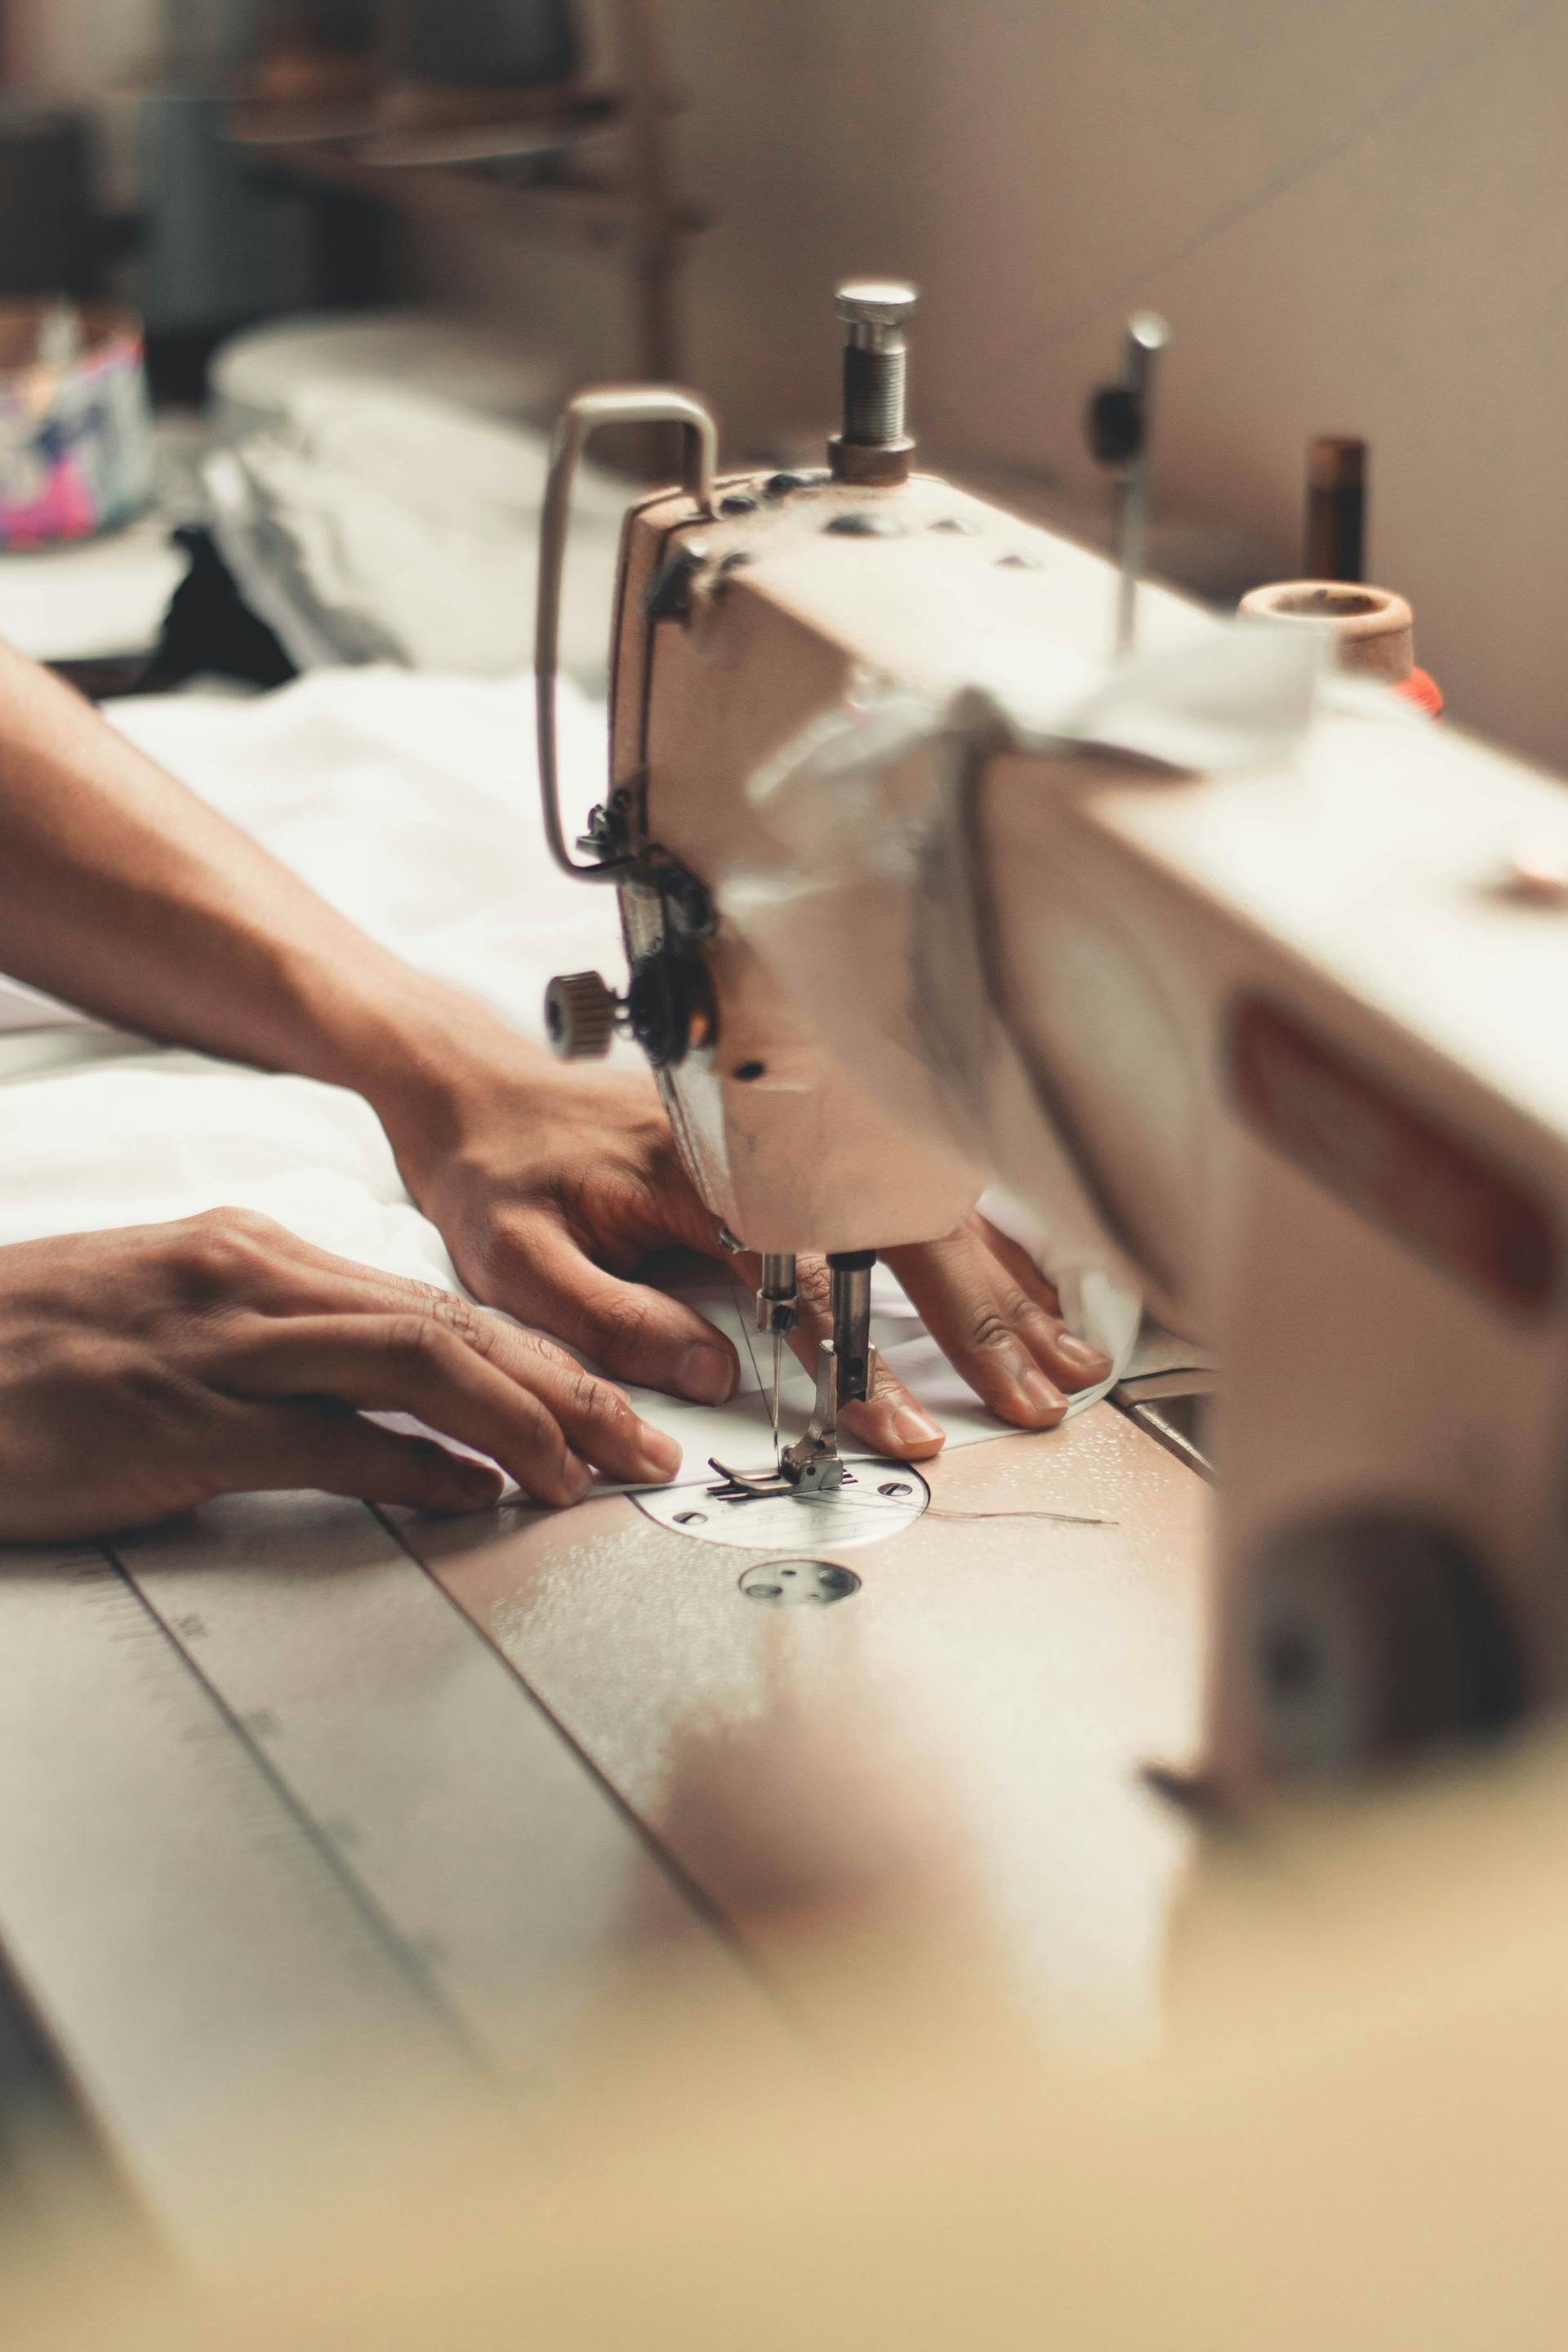 Una persona utilizando una máquina de coser | Fuente: Pexels